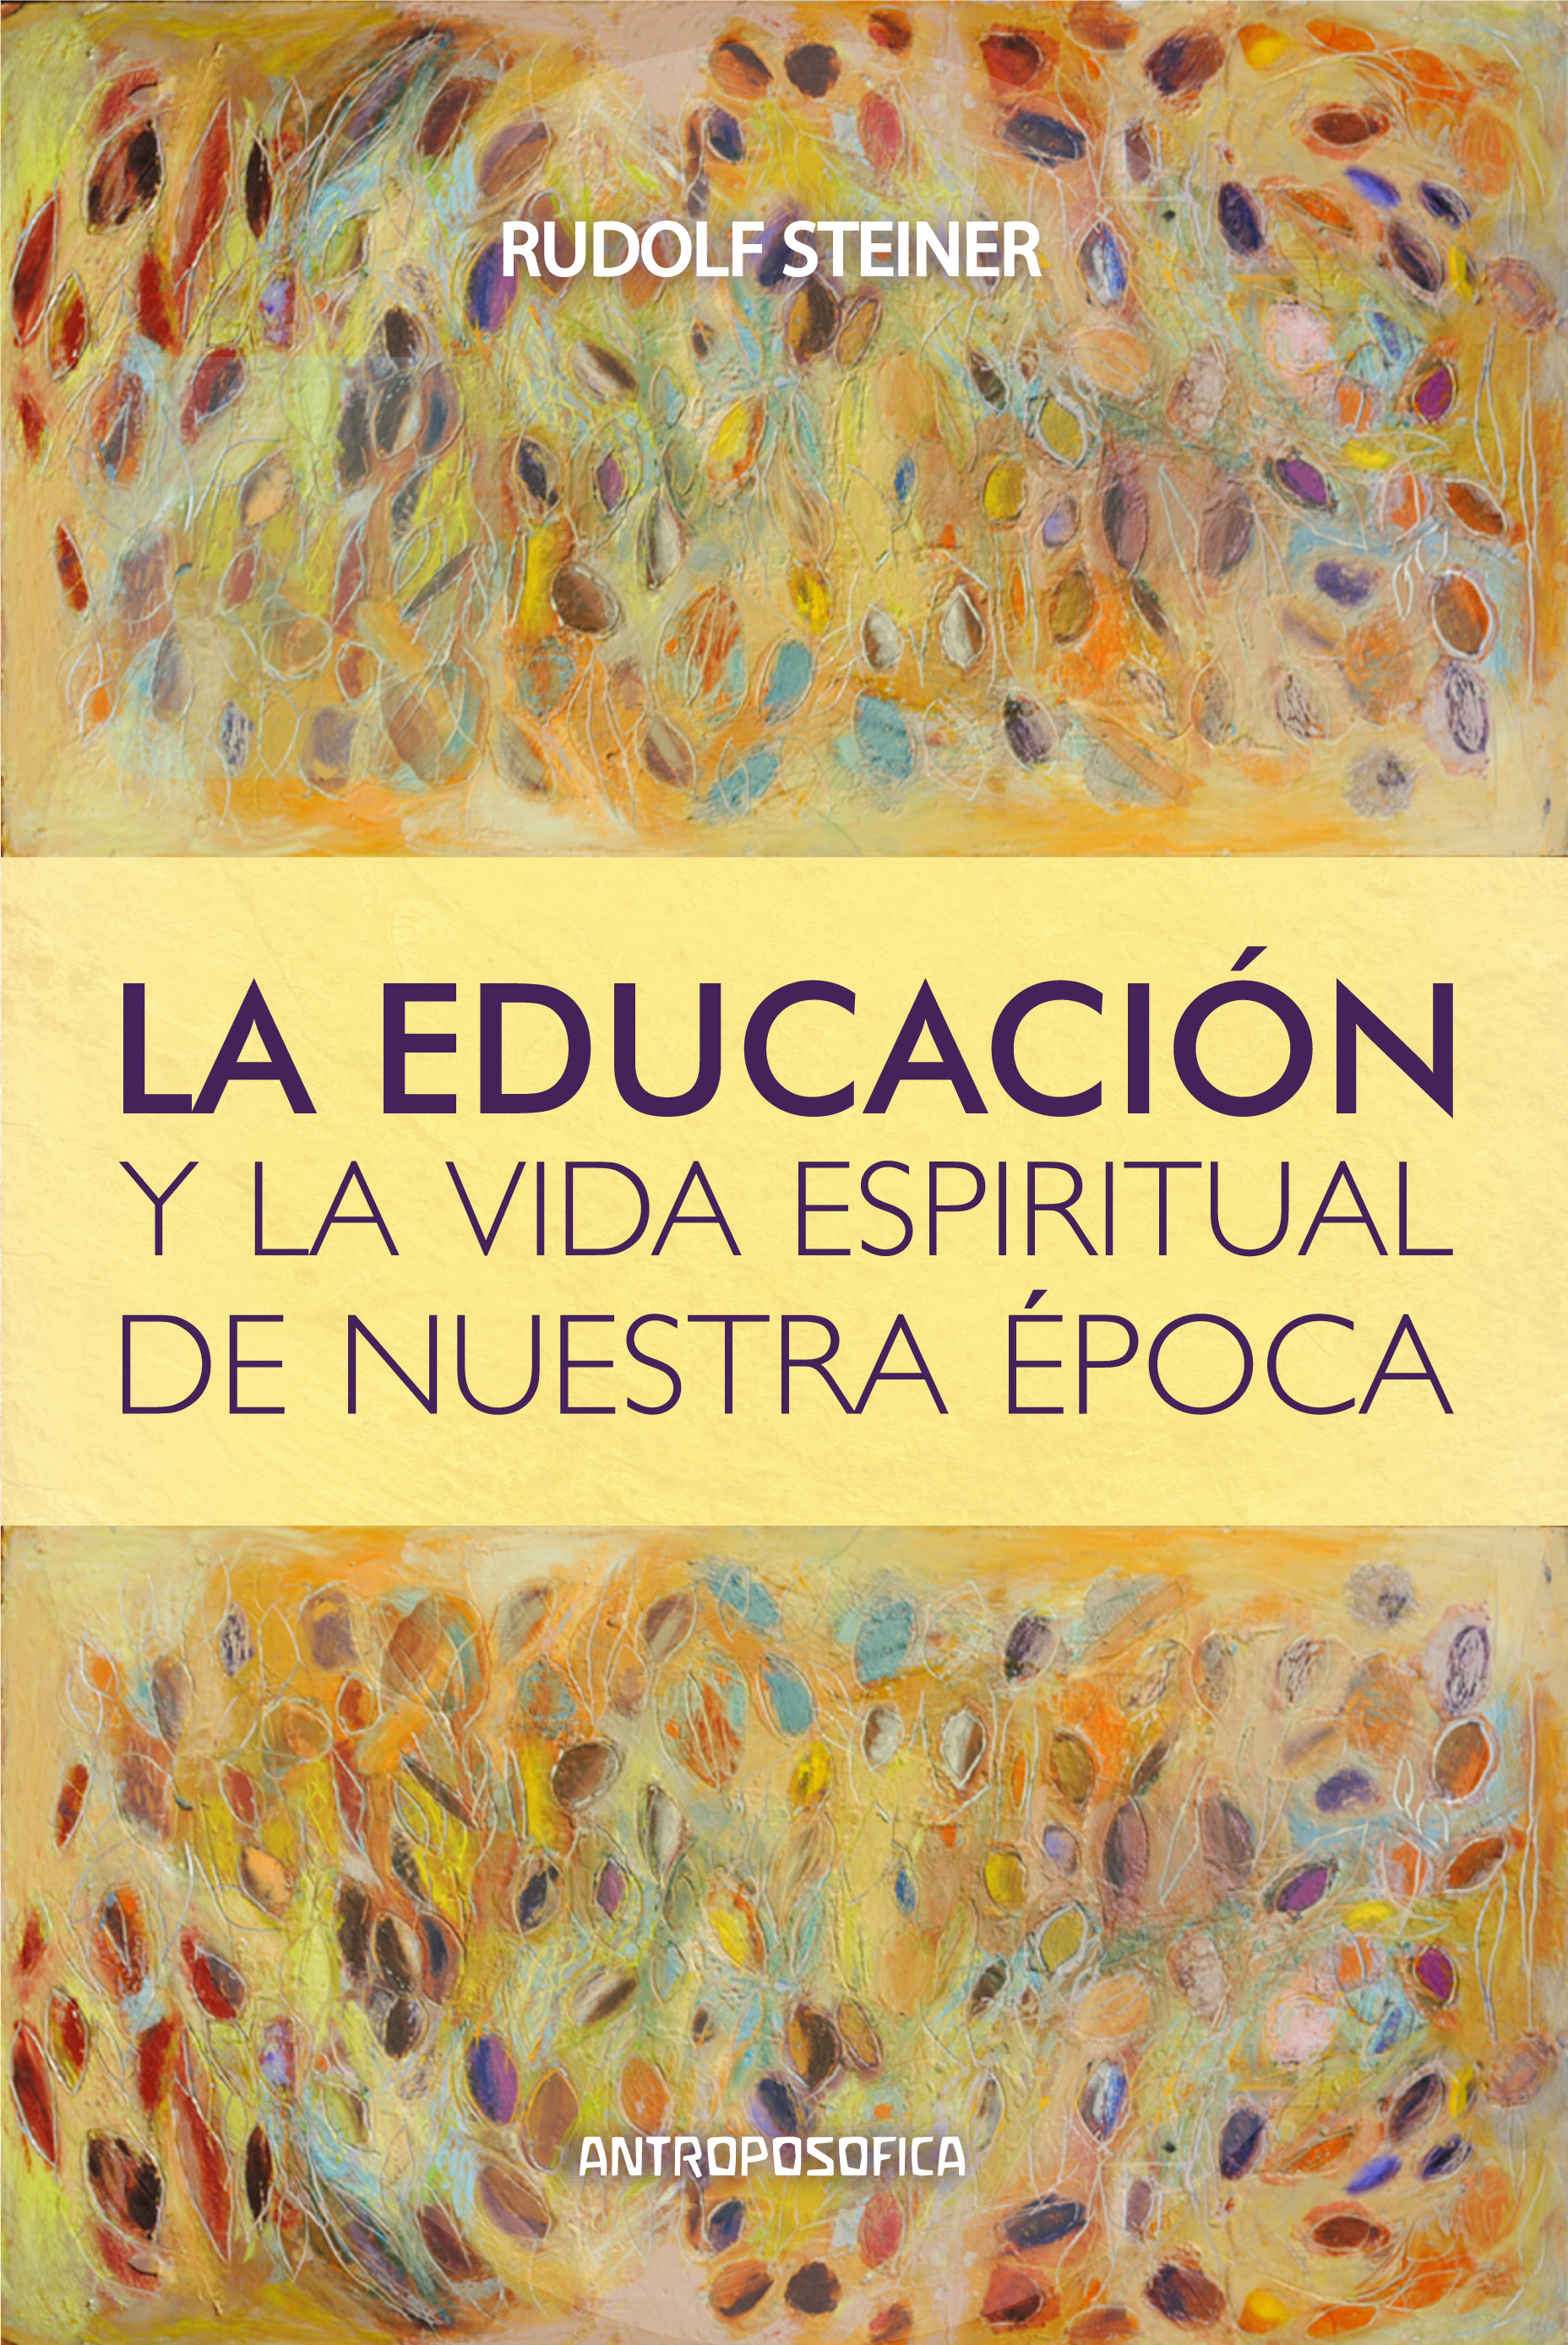 
            Educación y la vida espiritual de nuestra época, La